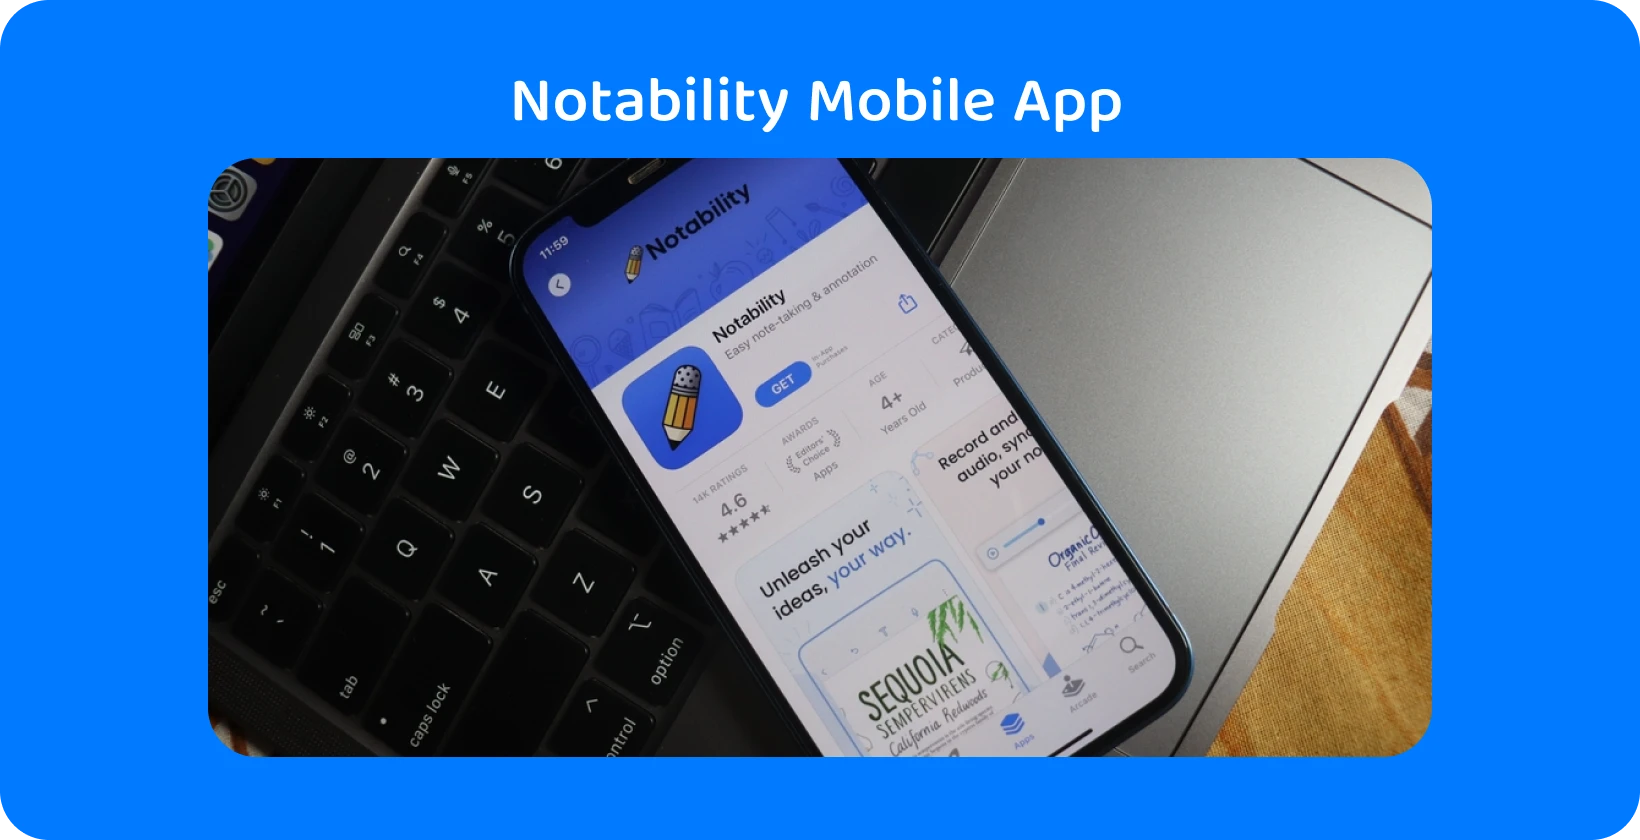 Notability ứng dụng trên màn hình điện thoại thông minh với tính năng phiên âm, thể hiện khả năng chuyển âm thanh thành văn bản.